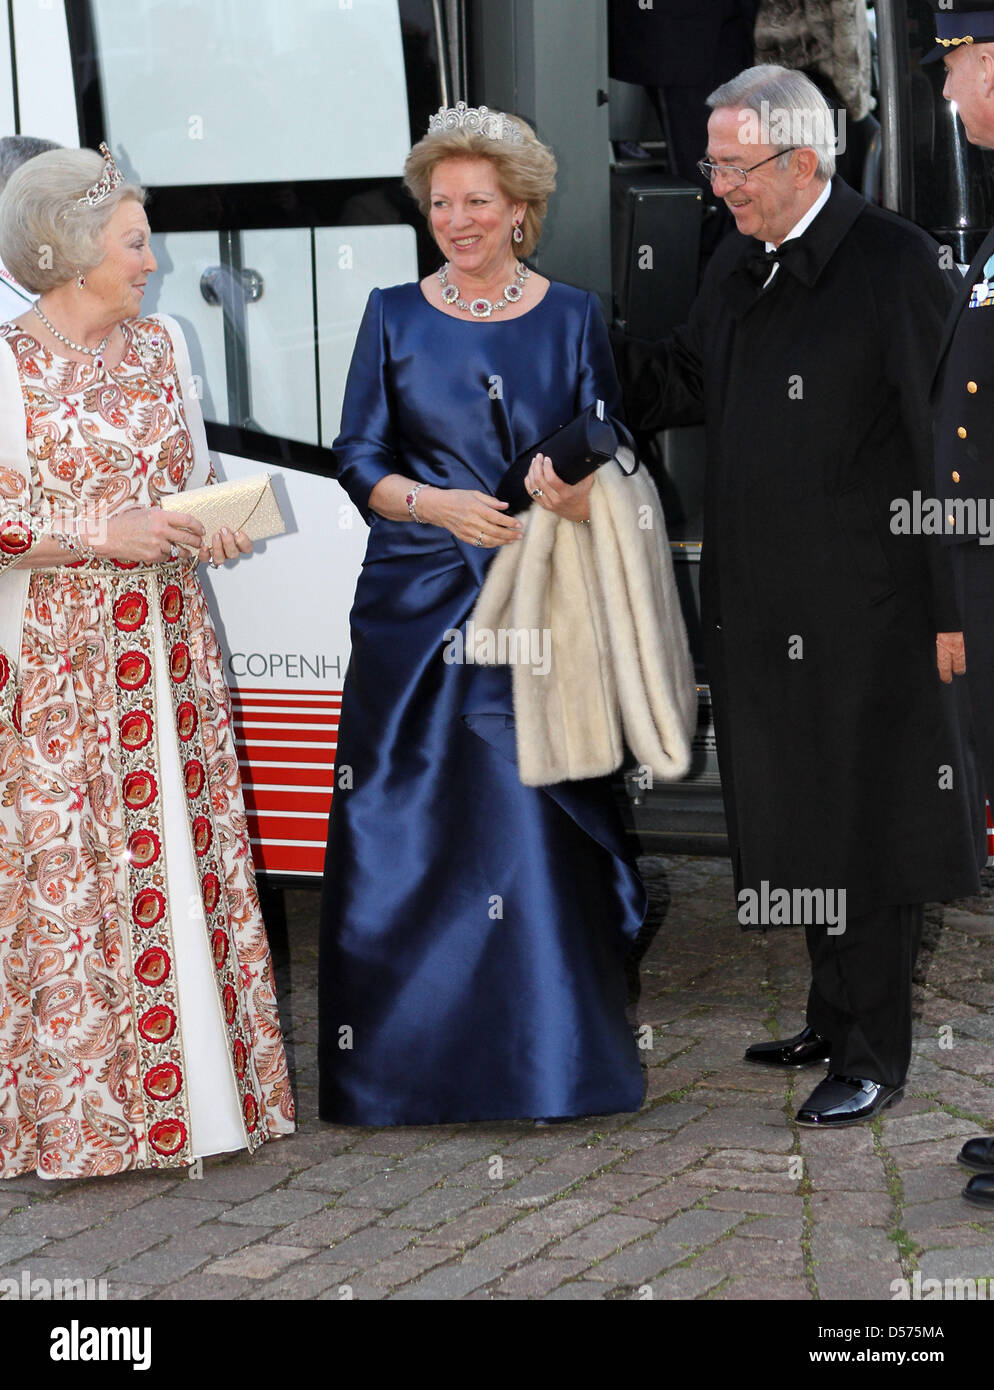 (L-R) La Reine Beatrix des Pays-Bas, la Reine Anne-Marie de Grèce et le roi Constantin de Grèce arrivent pour le dîner de gala à l'occasion de la célébration du 70e anniversaire de la Reine Margrethe II de Denamrk à Fredensborg Palace, Danemark, 16 avril 2010. Photo : Albert Nieboer (Pays-Bas) Banque D'Images